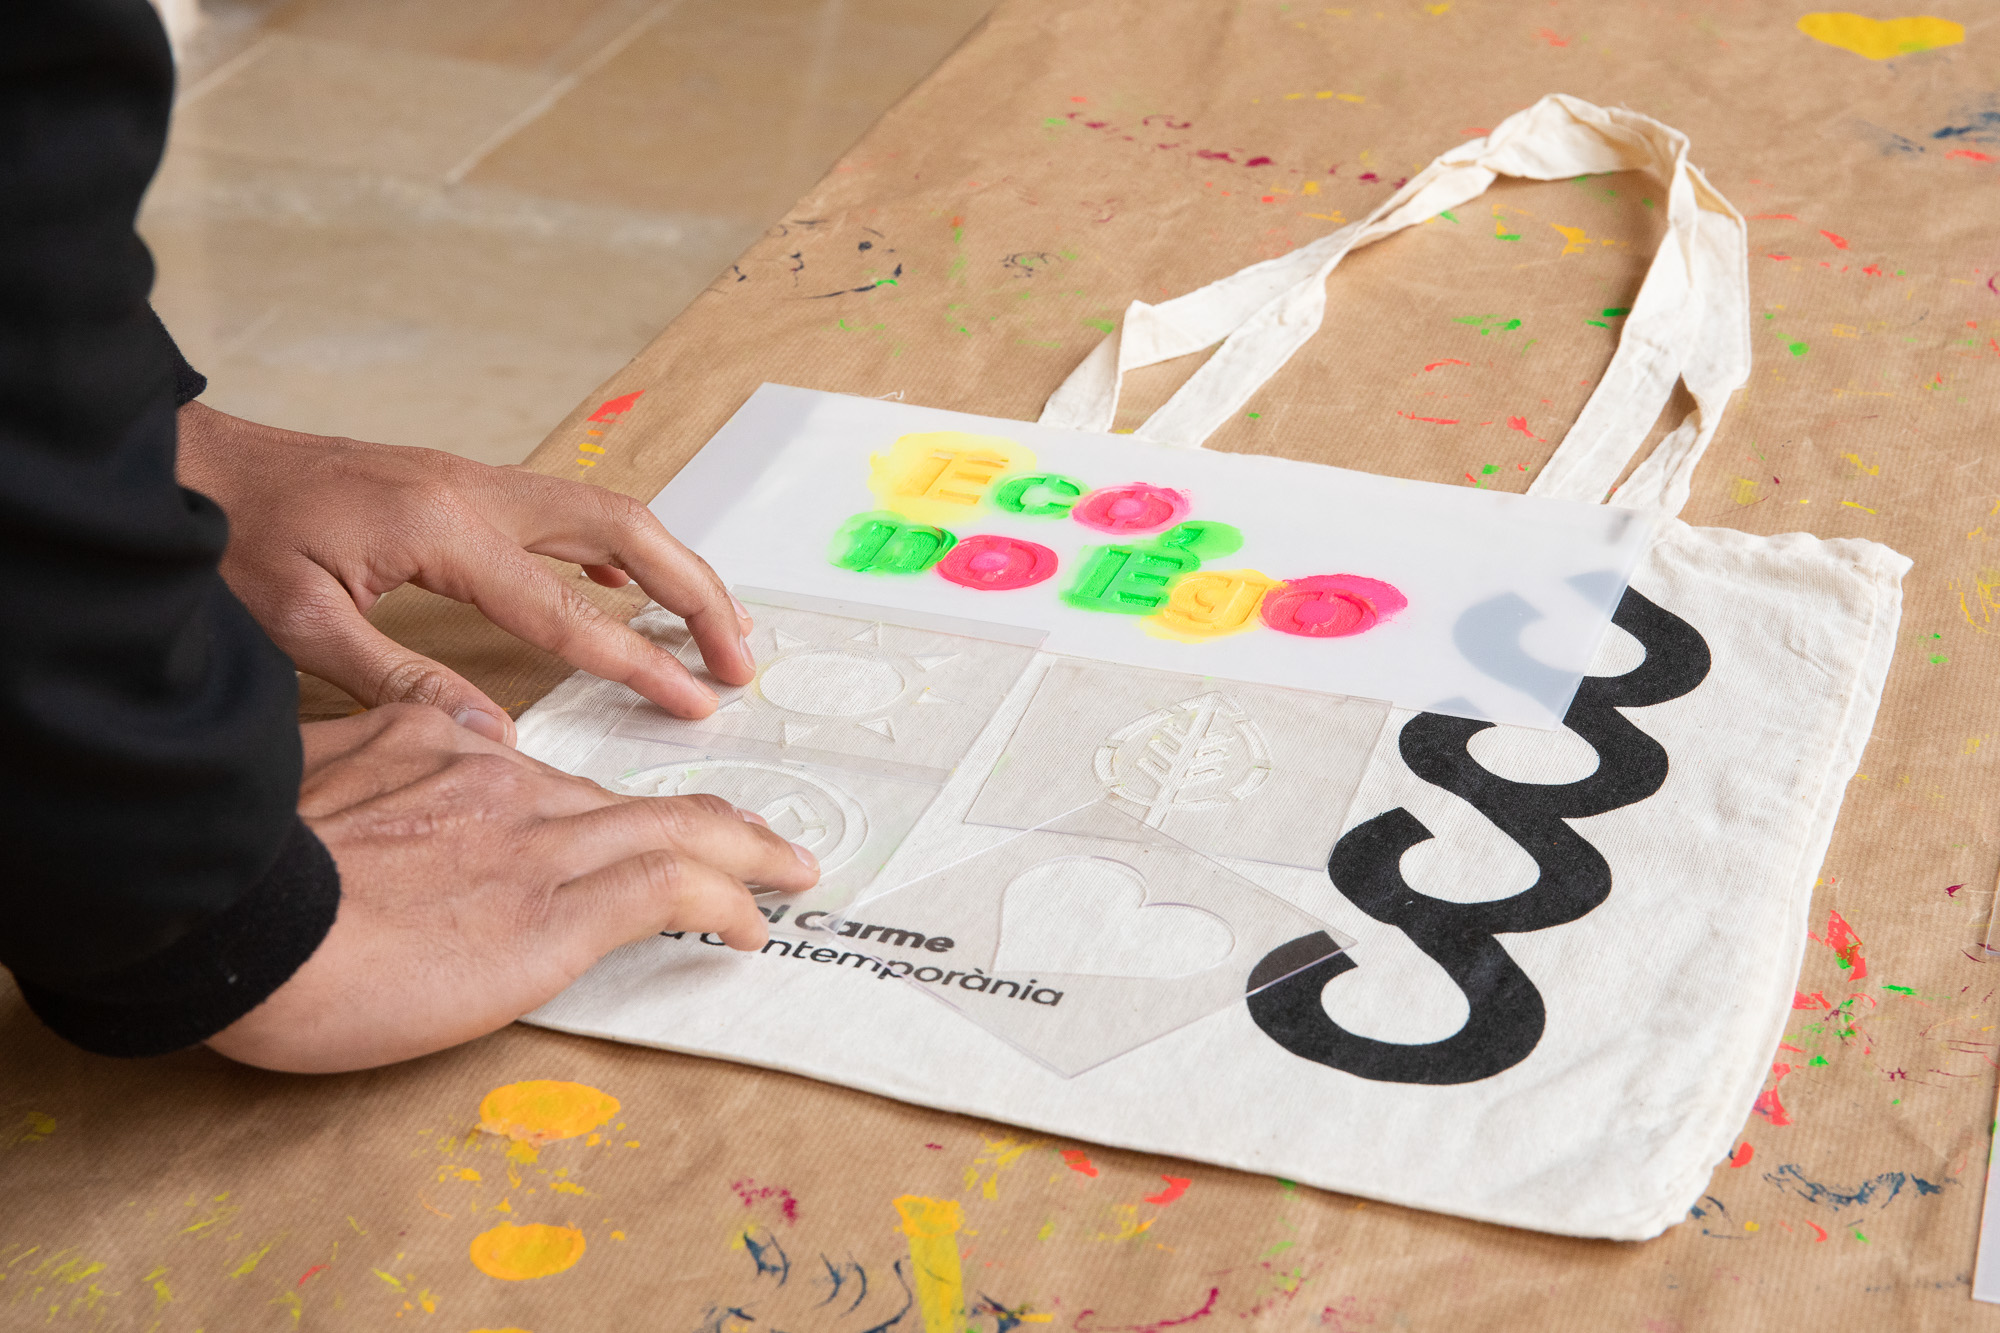 El Centre del Carme de Valencia invita a explorar la propia creatividad a través de la customización